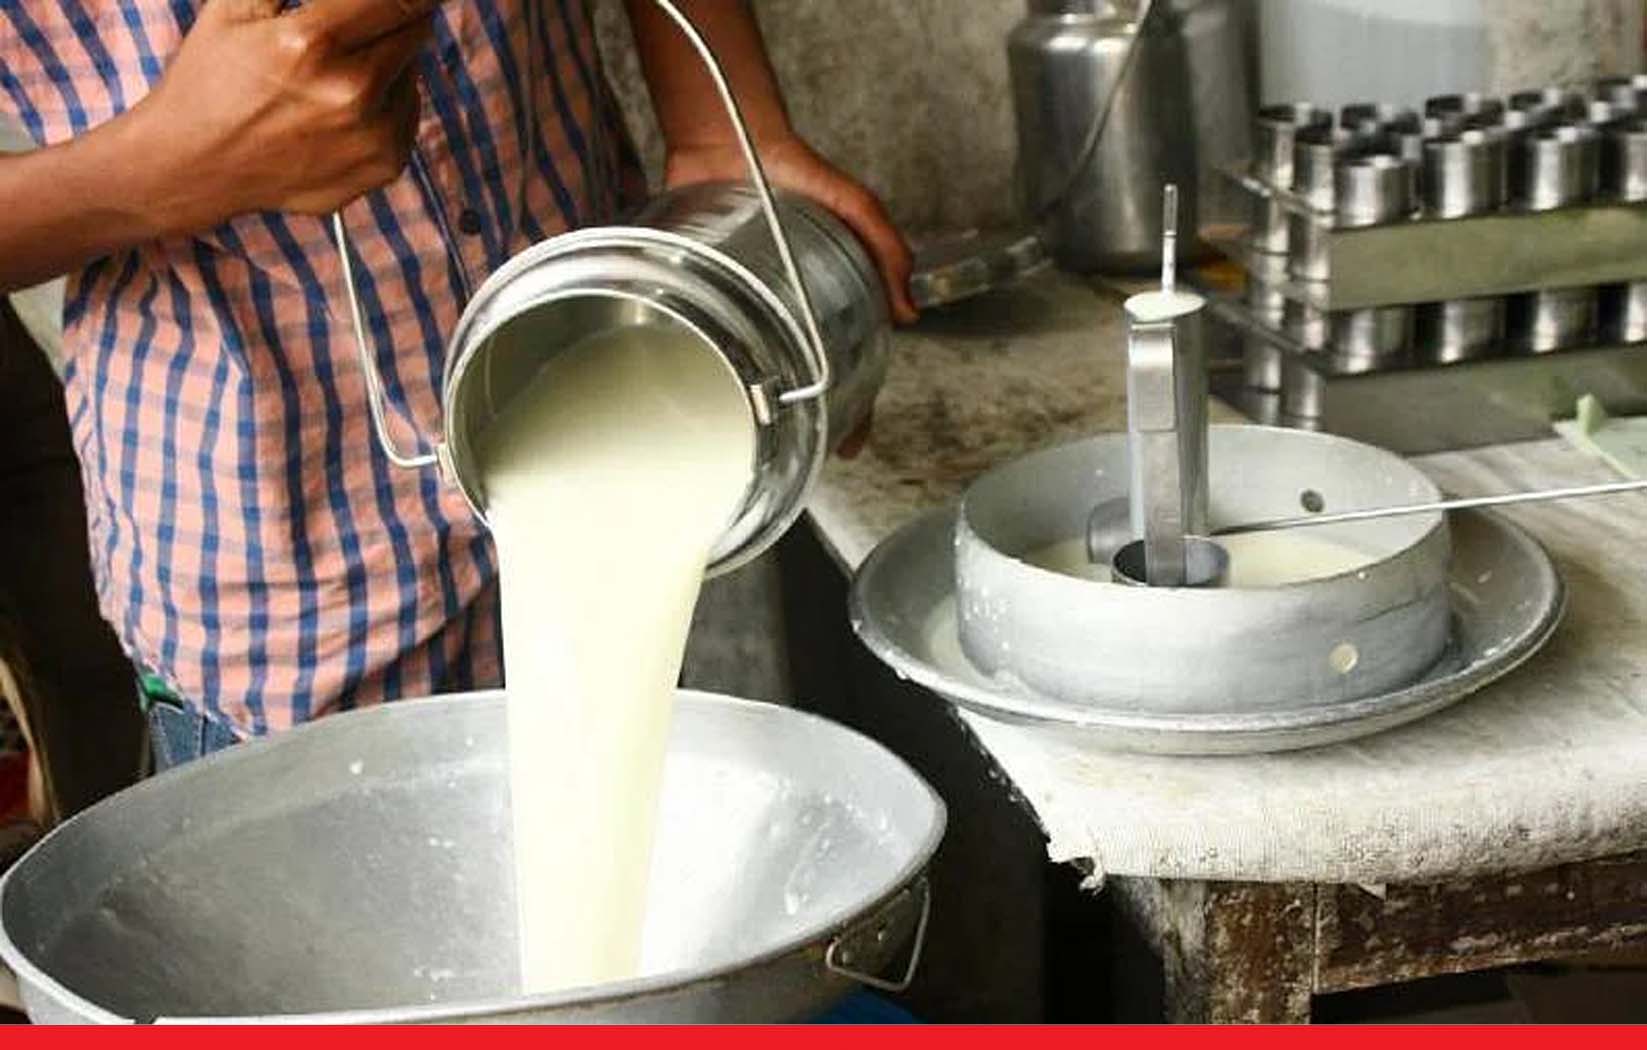 भोपाल दुग्ध संघ ने 21 मार्च से दूध के दाम चार से पांच रुपए प्रति लीटर बढ़ाने के दिये आदेश